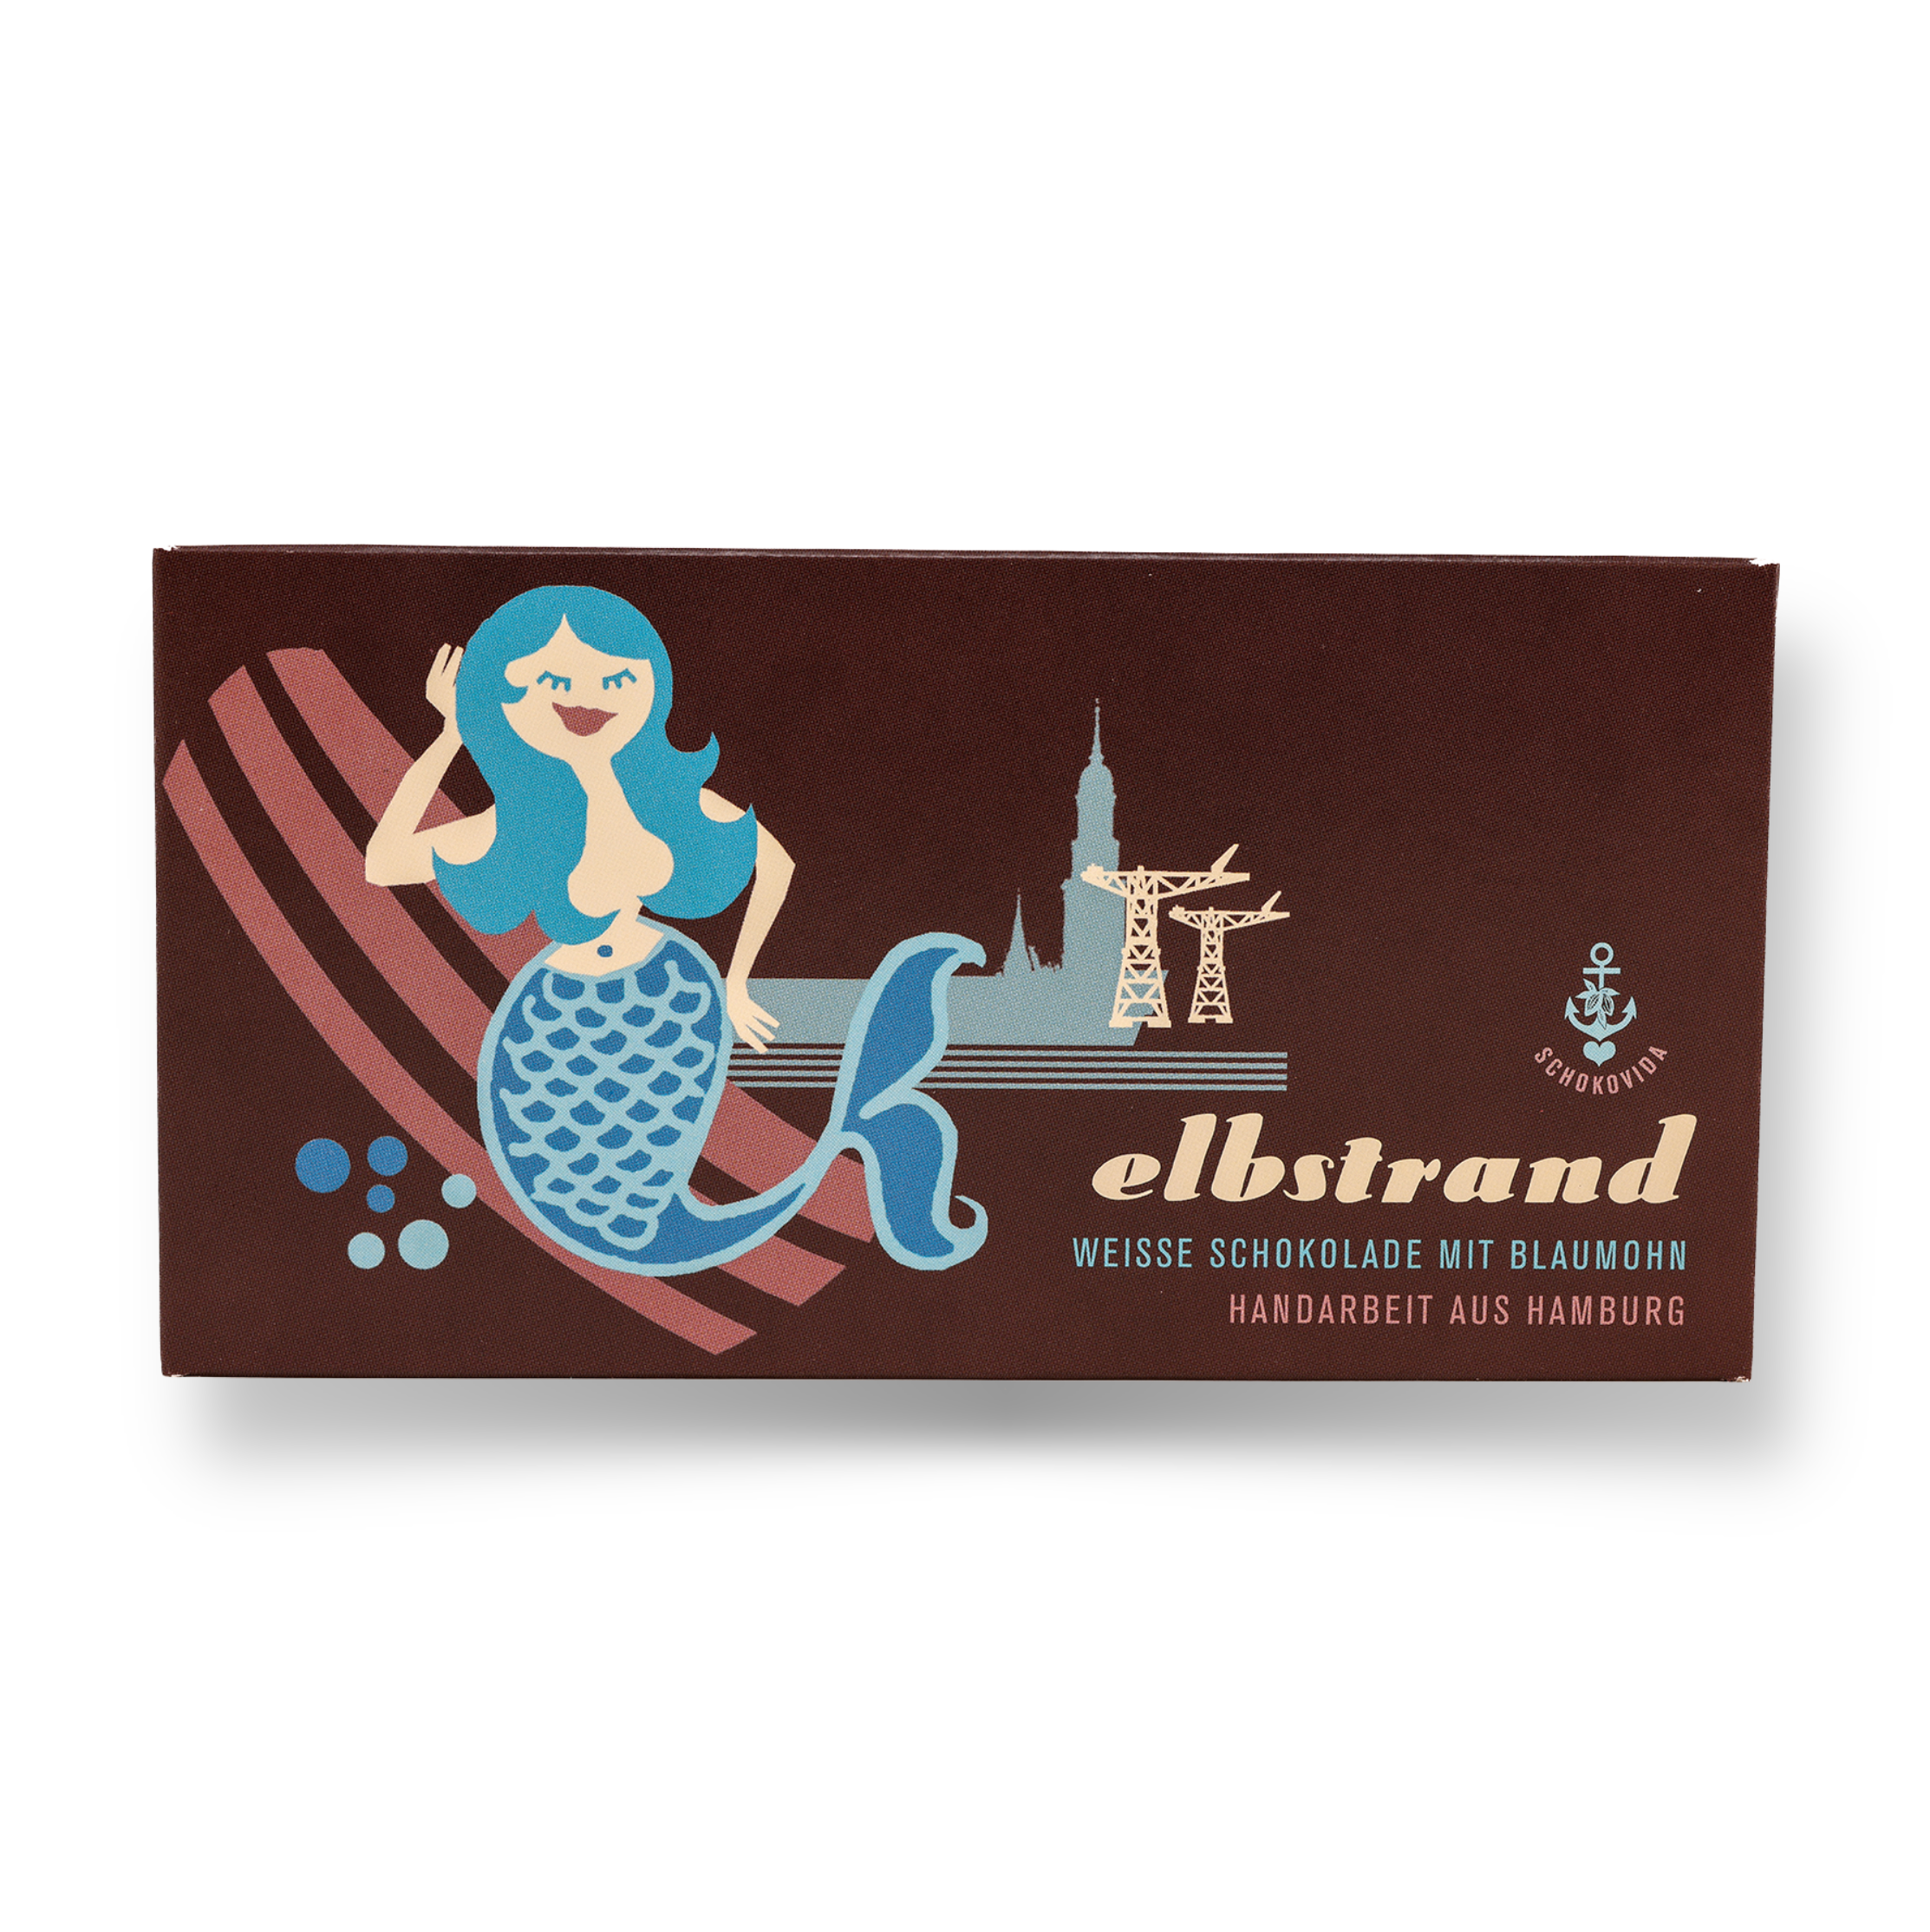 Elbstrand – Weiße Schokolade mit Blaumohn, 100g